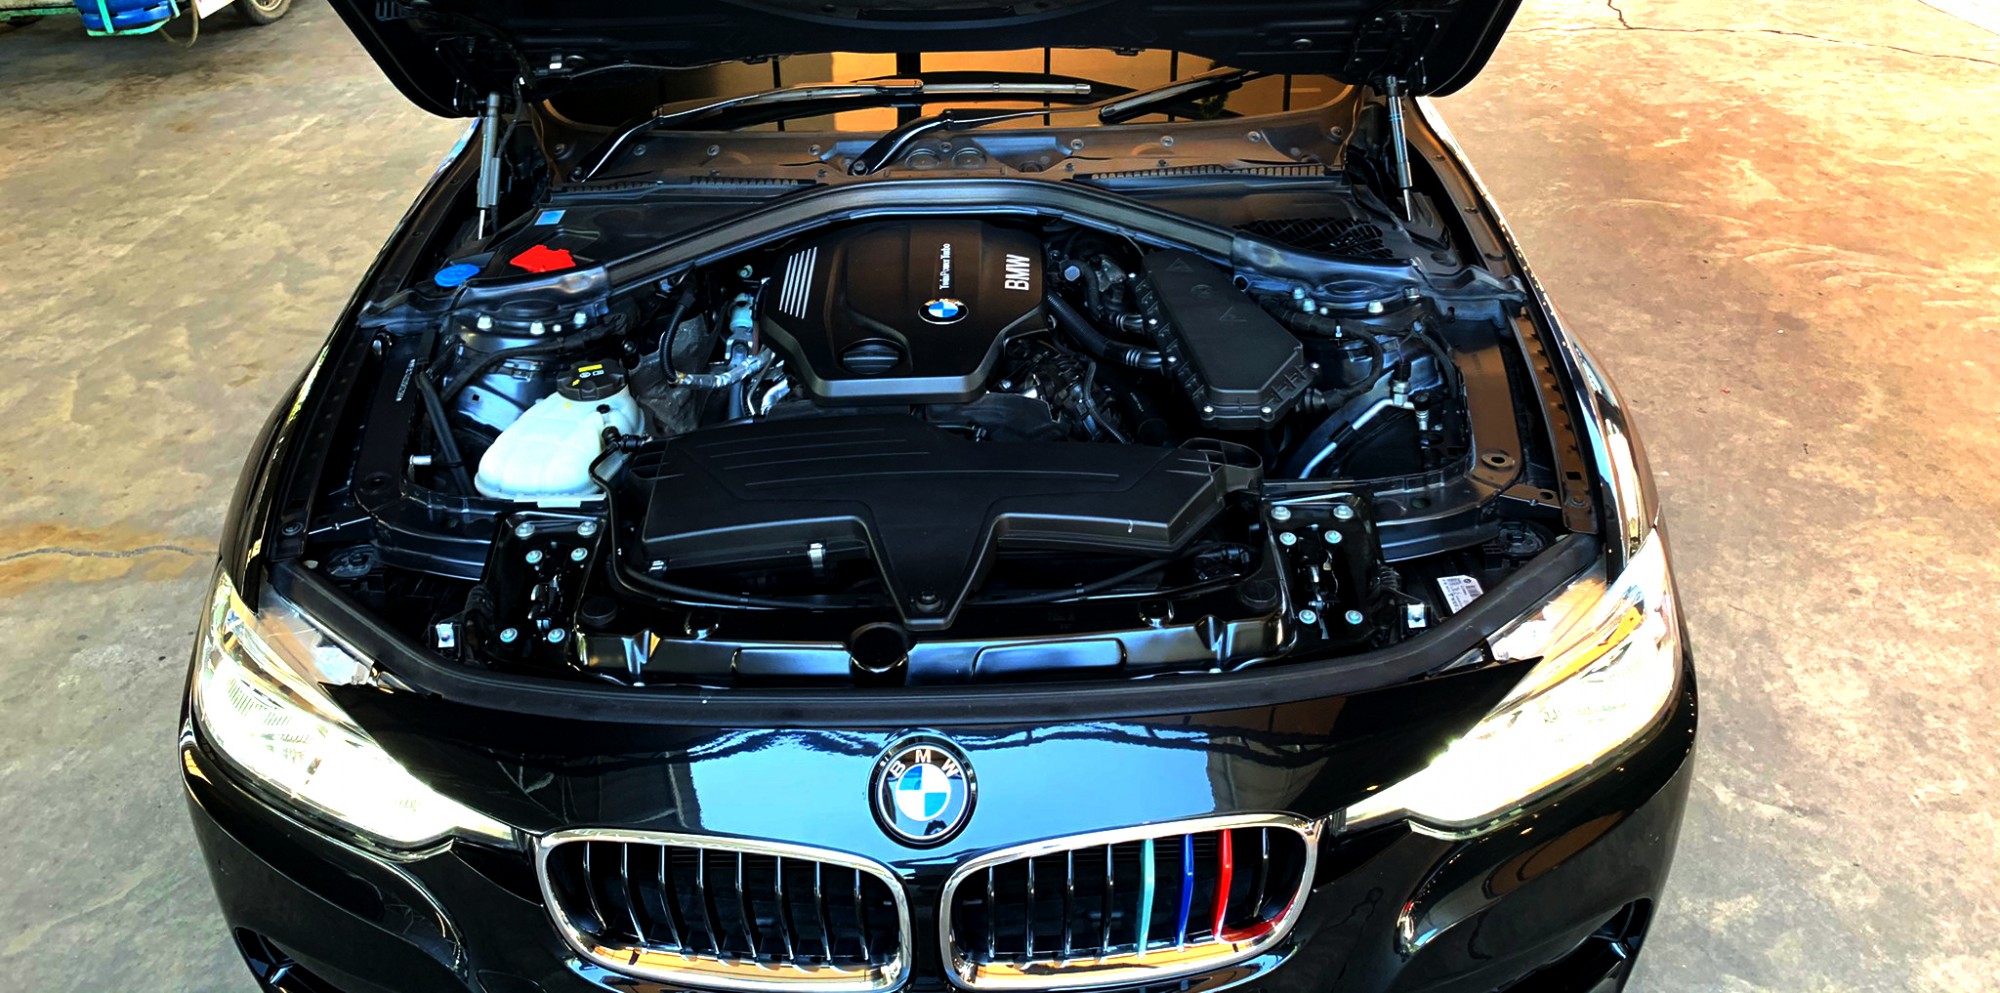 BMW 320d M Sport LCI 2018 ไมล์ 41,xxx km BSI 03/09/2024 (6 yrs / 120,000 km)